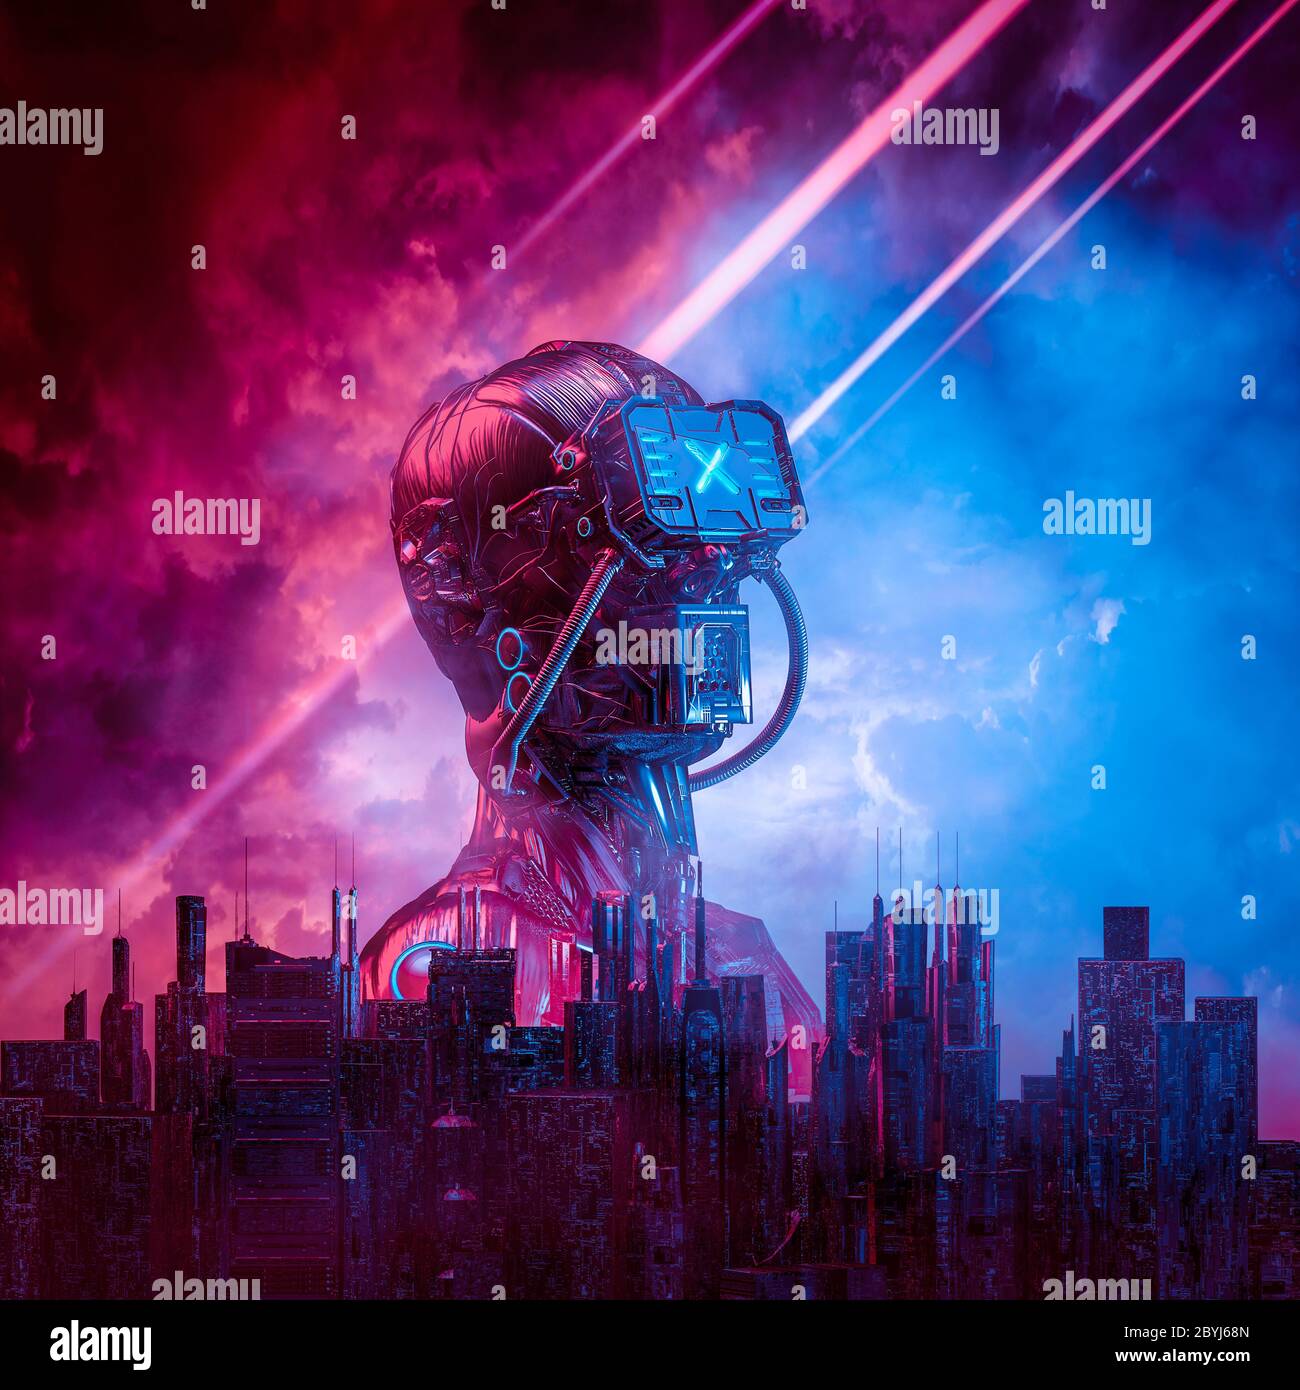 Android Red Dawn / 3D-Illustration von männlichen Science Fiction humanoiden Cyborg steigt hinter der modernen Stadt gegen ominösen Himmel Stockfoto